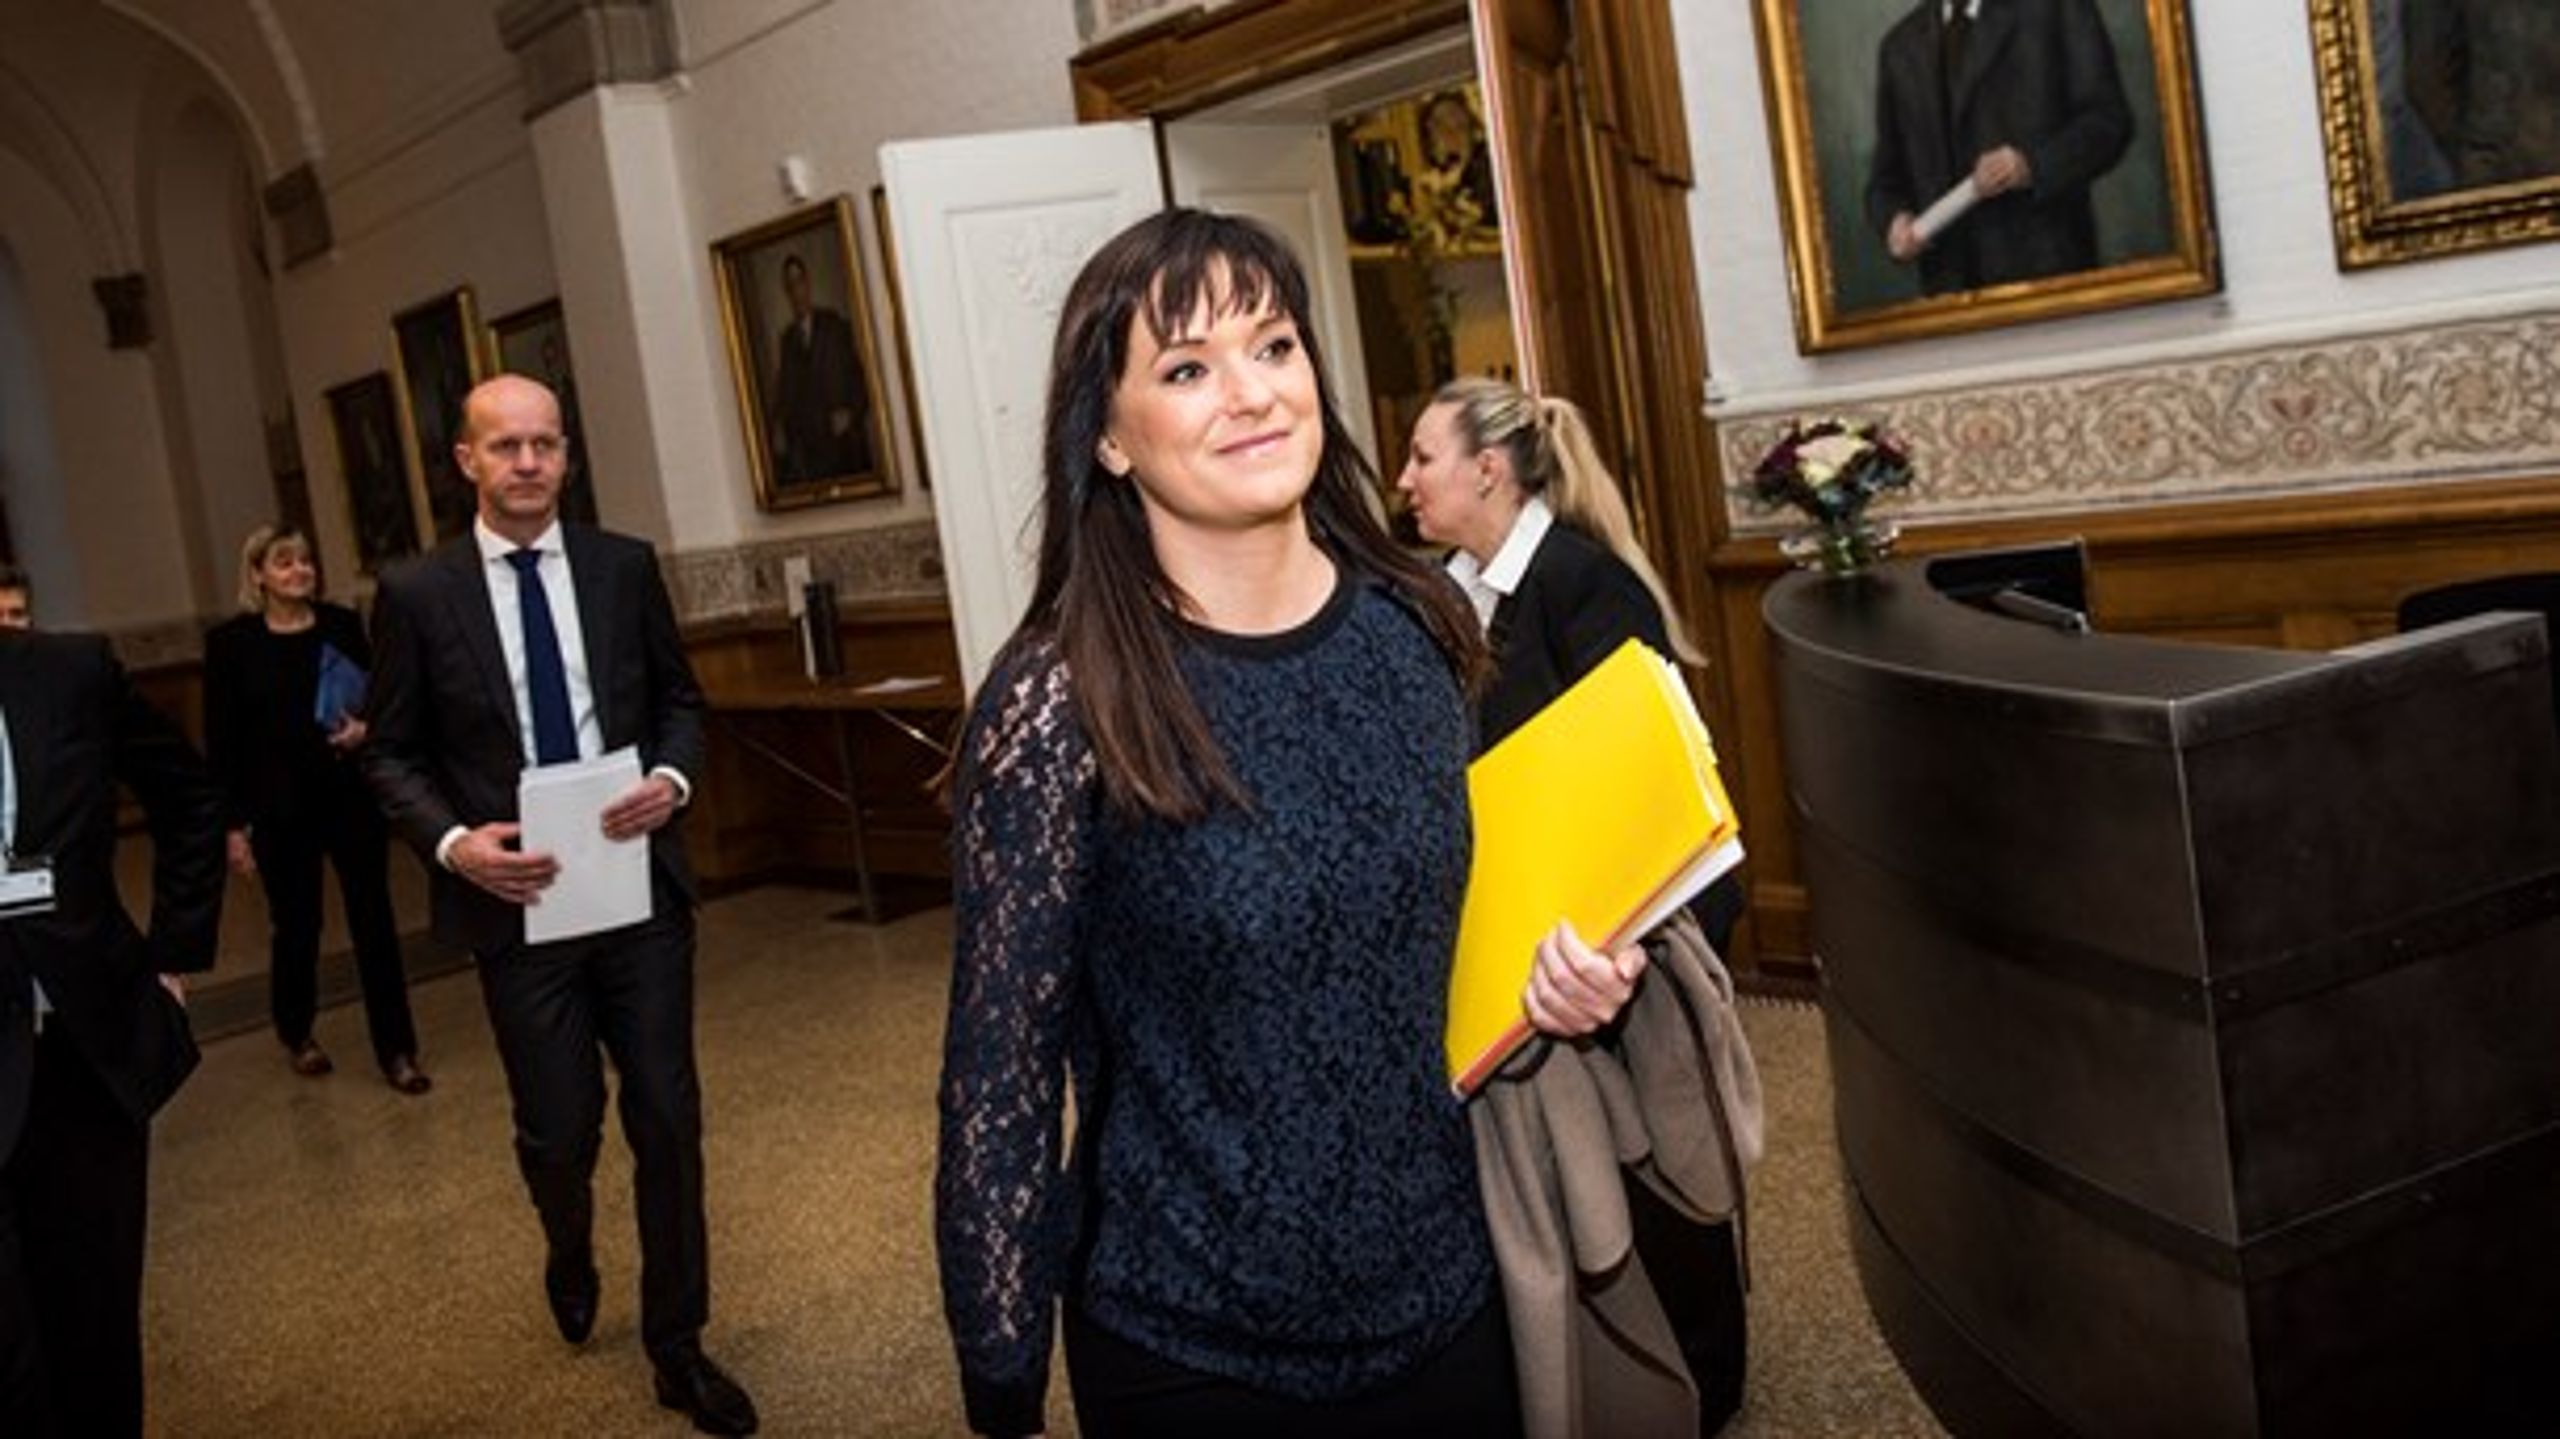 Sophie Løhde (V), minister for offentlig innovation, møder kritik fra det statsligt ansatte, efter hun har udtrykt støtte til lederne. Her ses hun på vej til samråd om sagen.